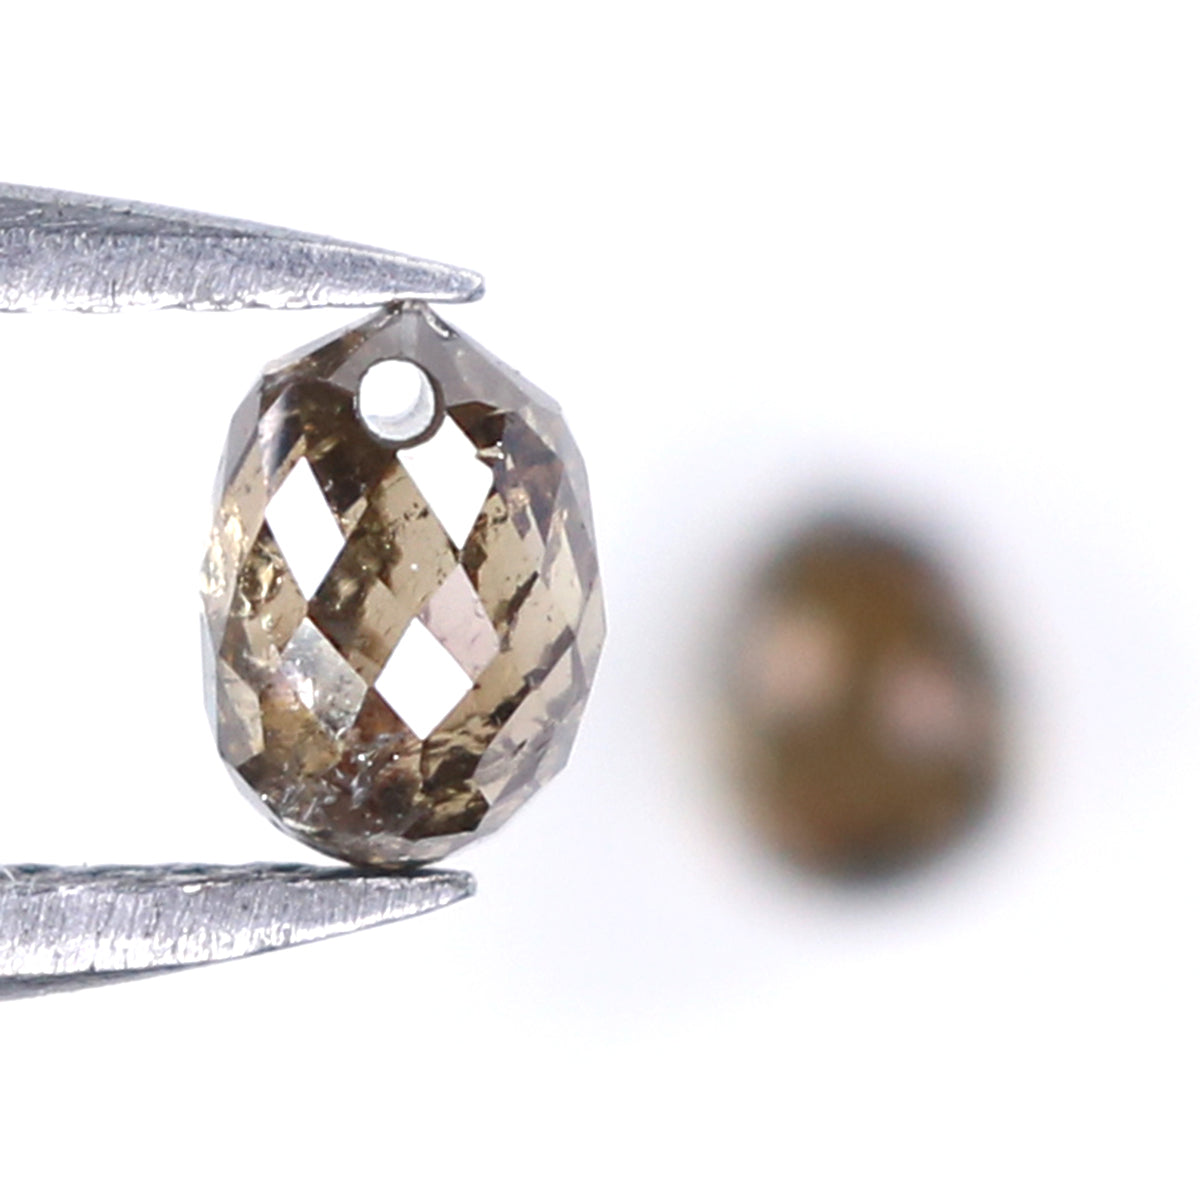 Natural Loose briolette Brown Color Diamond 0.86 CT 4.29 MM Drop Shape Rose Cut Diamond L9911